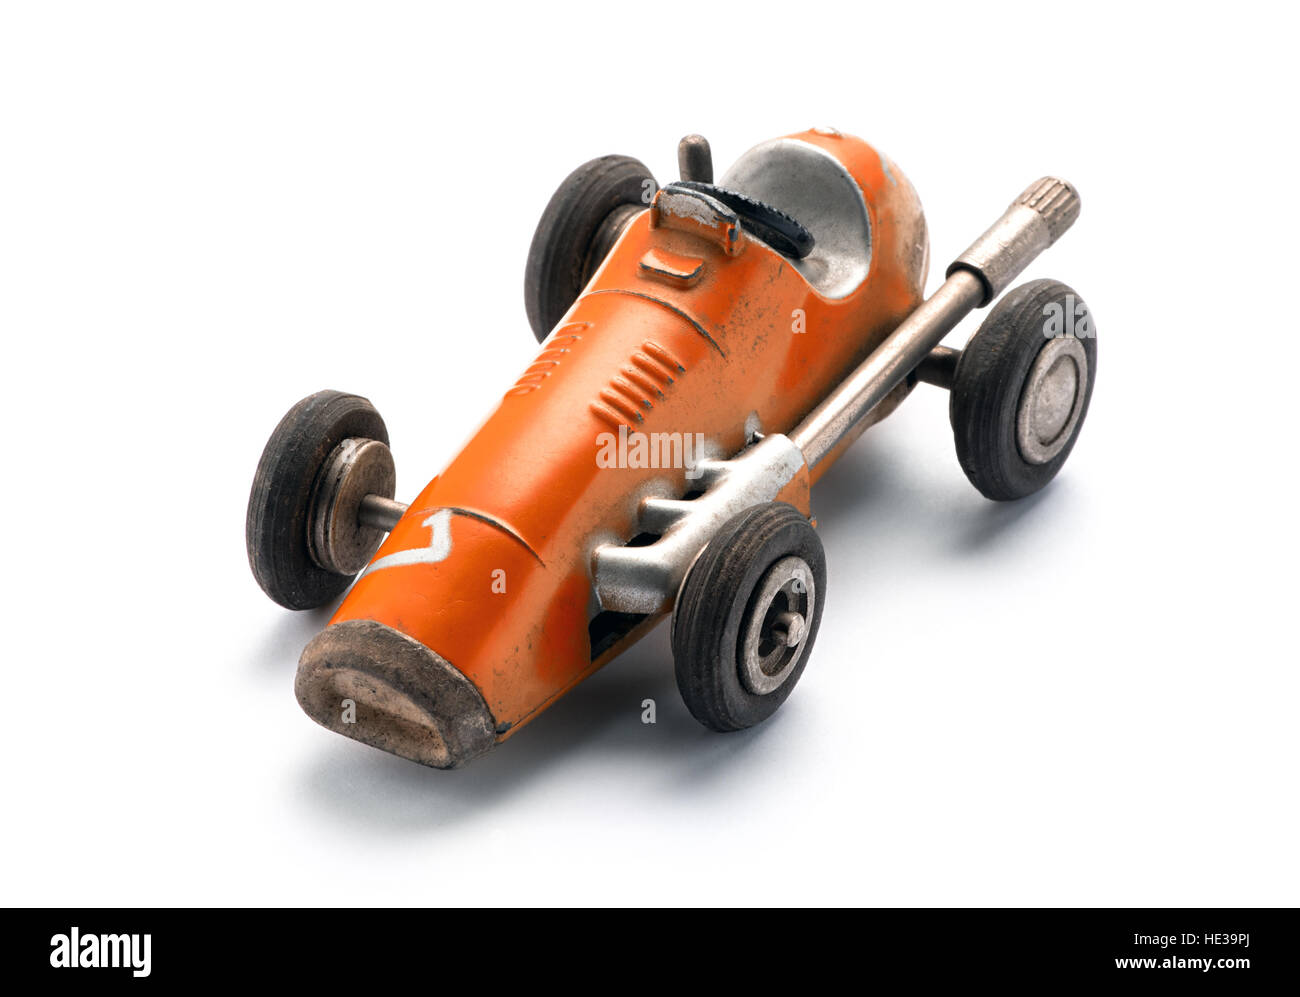 Colorato arancione giocattolo vintage racing auto in una di tre quarti anteriore, vista da sopra su uno sfondo bianco con spazio di copia Foto Stock